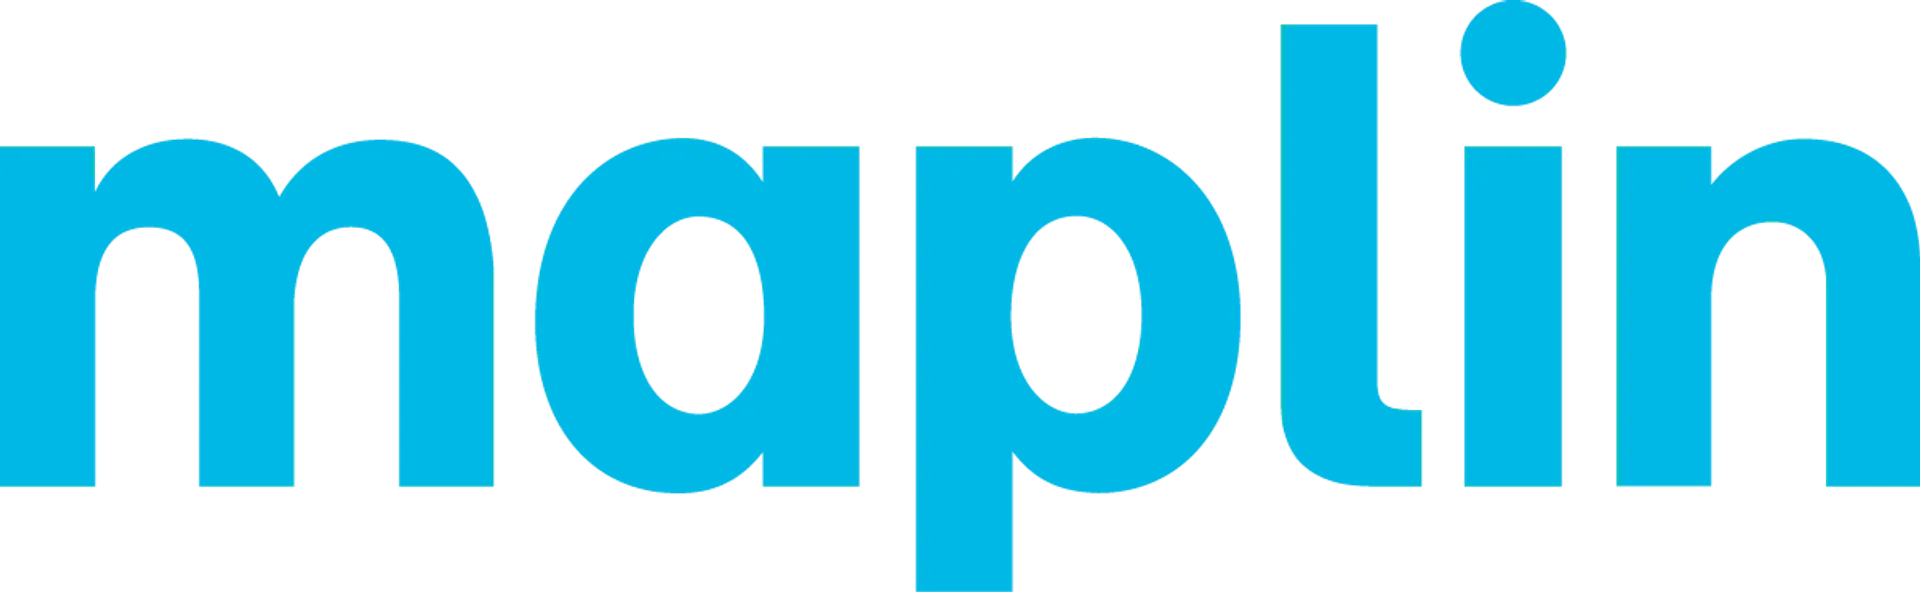 MAPLIN logo